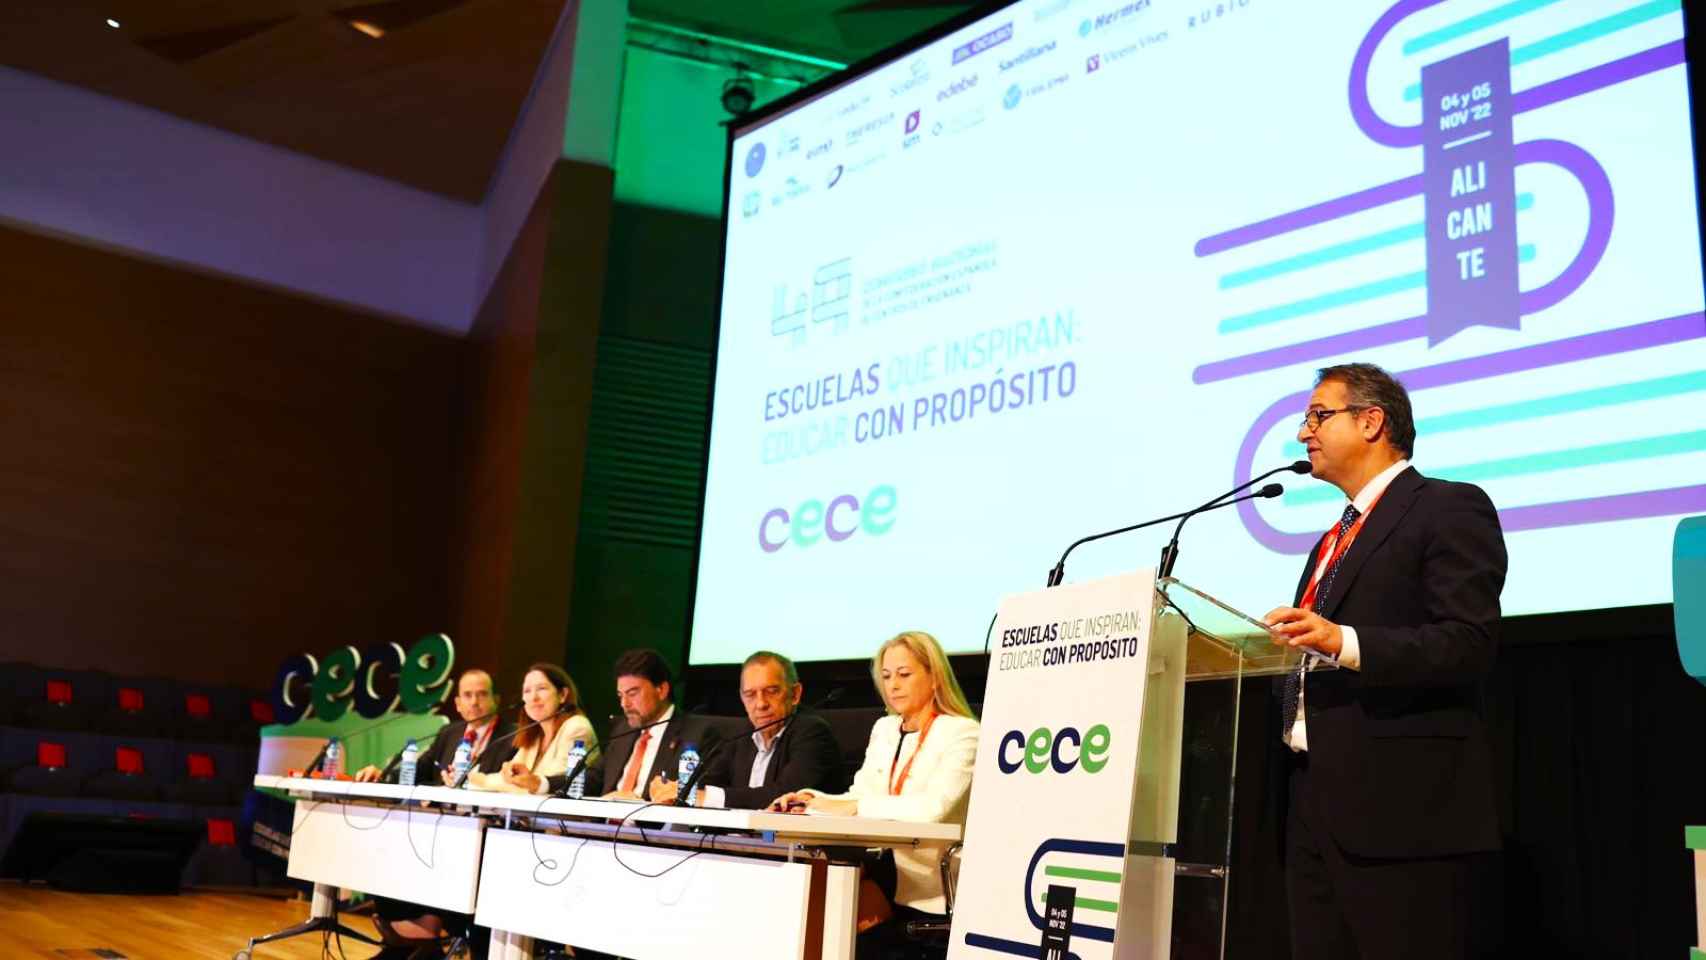 El congreso CECE se celebra en Alicante este viernes y sábado, en la imagen su inauguración.